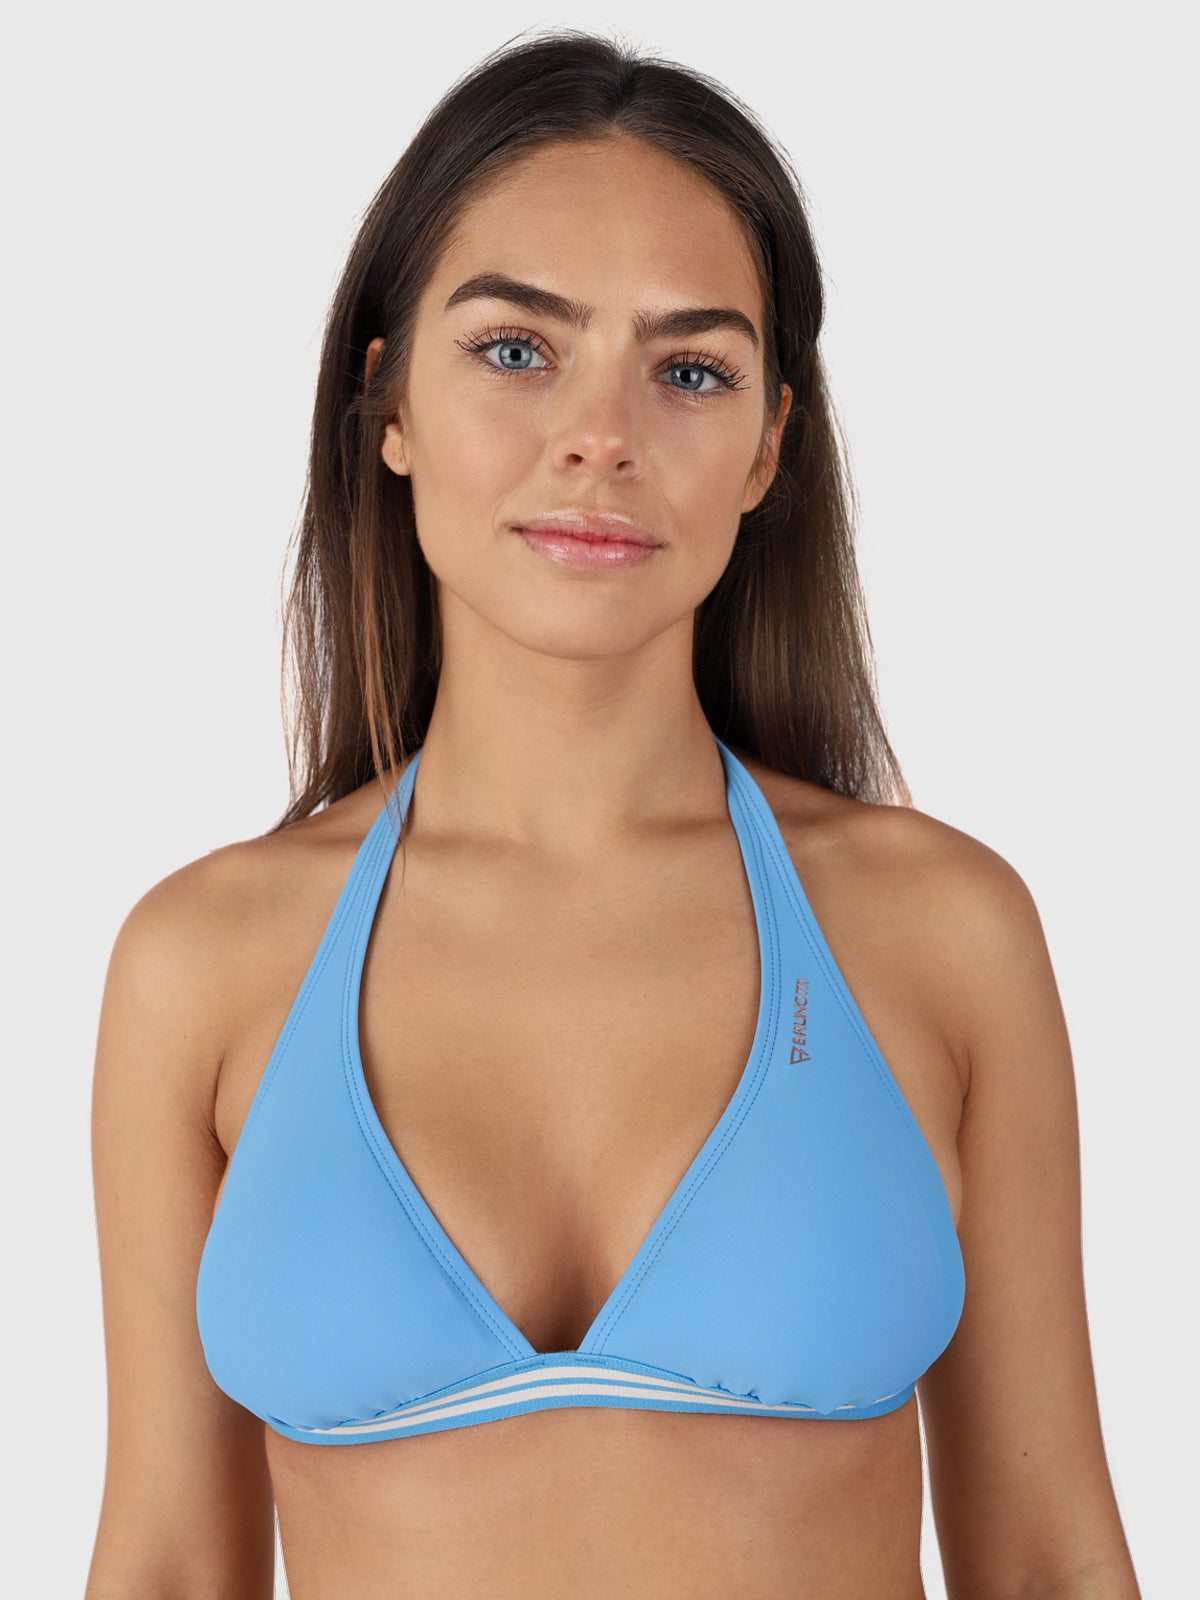 Xandra Damen Bikini Bralette Top | Blau